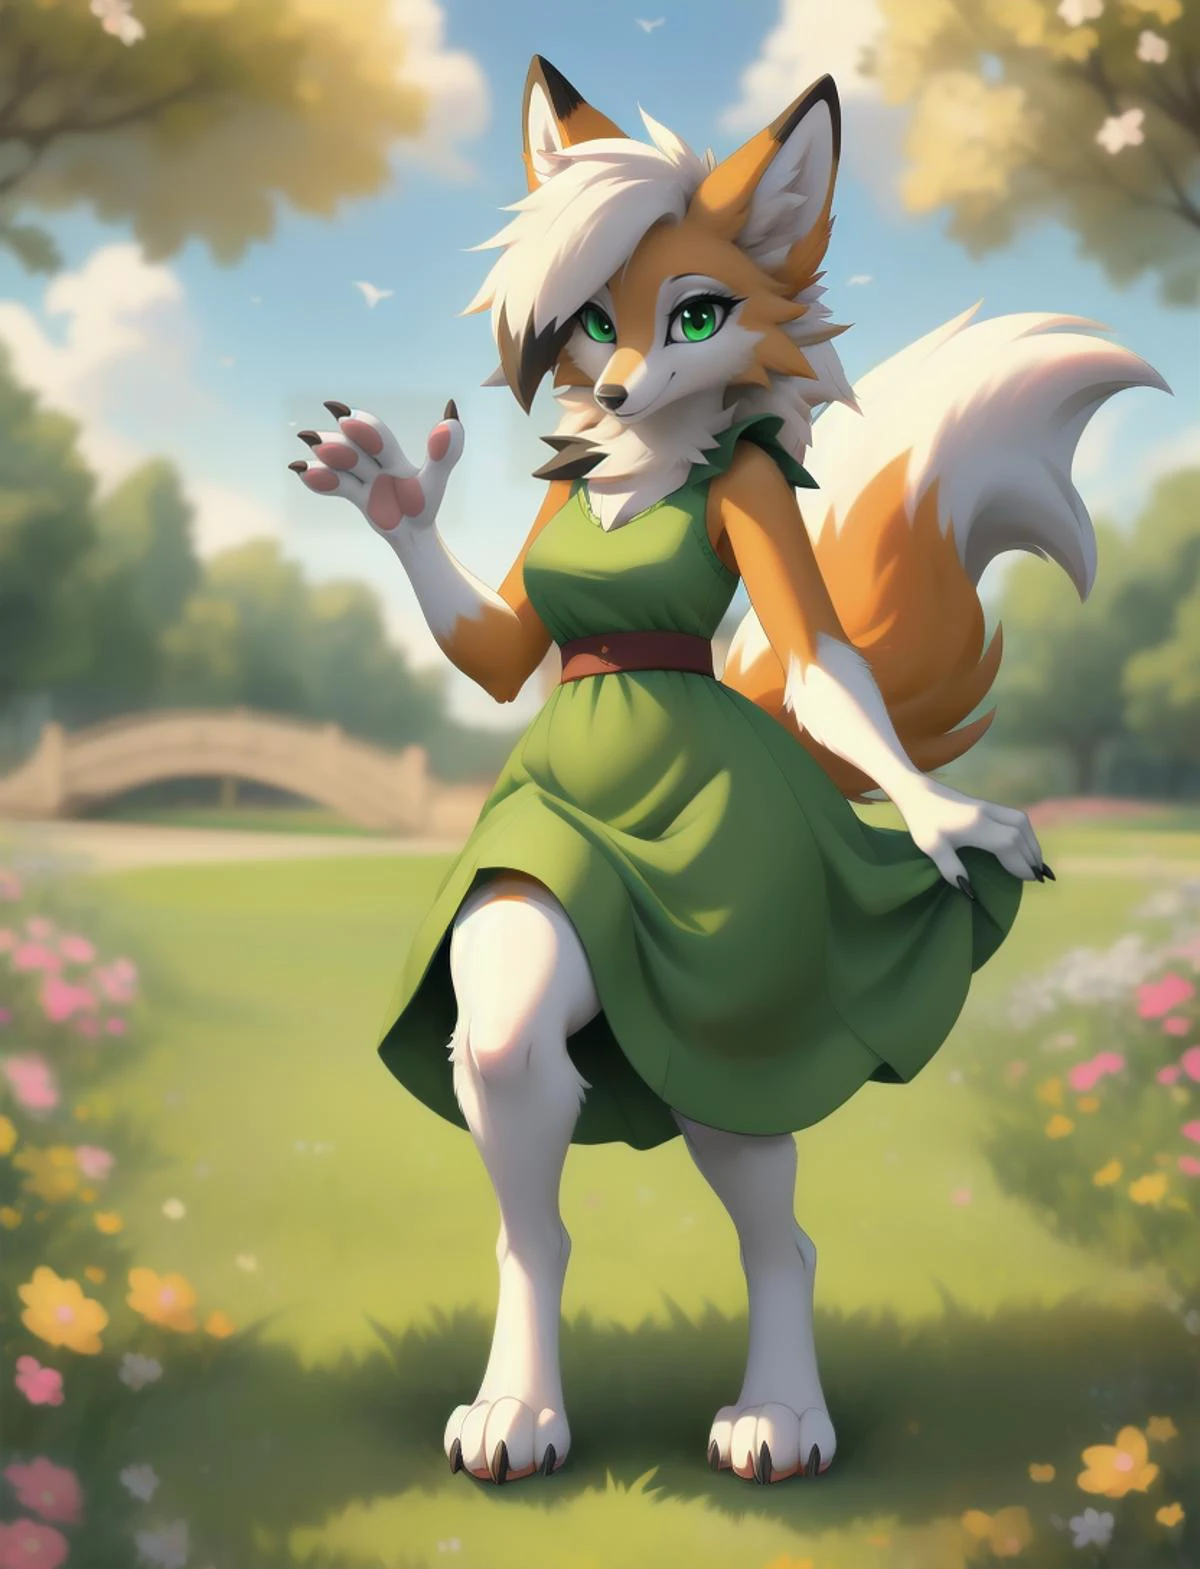 狼人, 一個可愛的綠眼睛的狐狸女孩, 穿著可愛的綠色連身裙, 在公园, 爪子, 4個腳趾, 爪子, 數位級, 手, 5個手指, 尾巴, 看著觀眾, 大腿粗, 小乳房, 